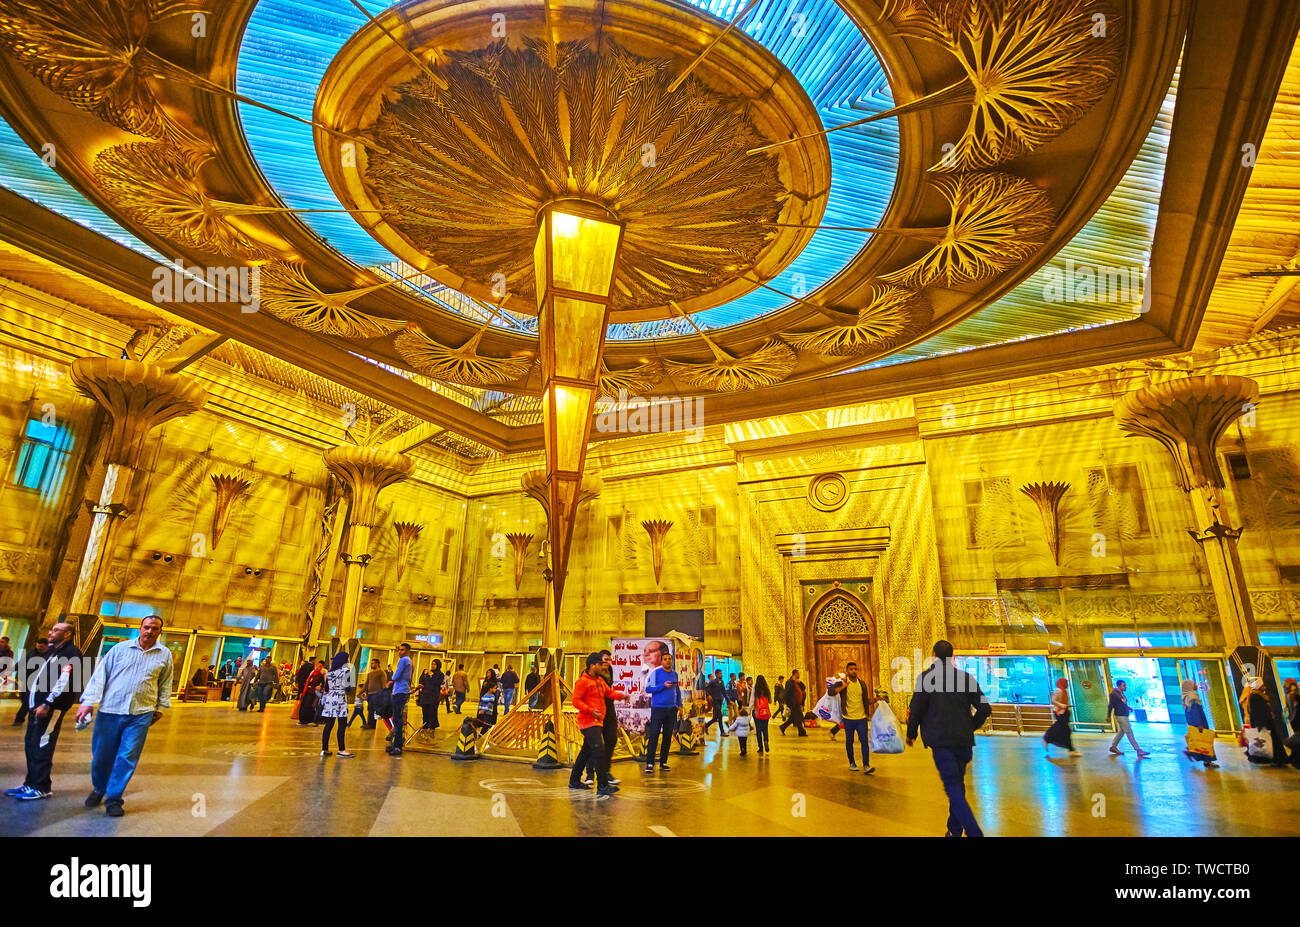 Kairo, Ägypten, 22. Dezember 2017: Das prächtige Interieur des Ramses (Misr) Bahnhof, mit antiken ägyptischen Motiven, einschließlich Pyramiden eingerichtet Stockfoto